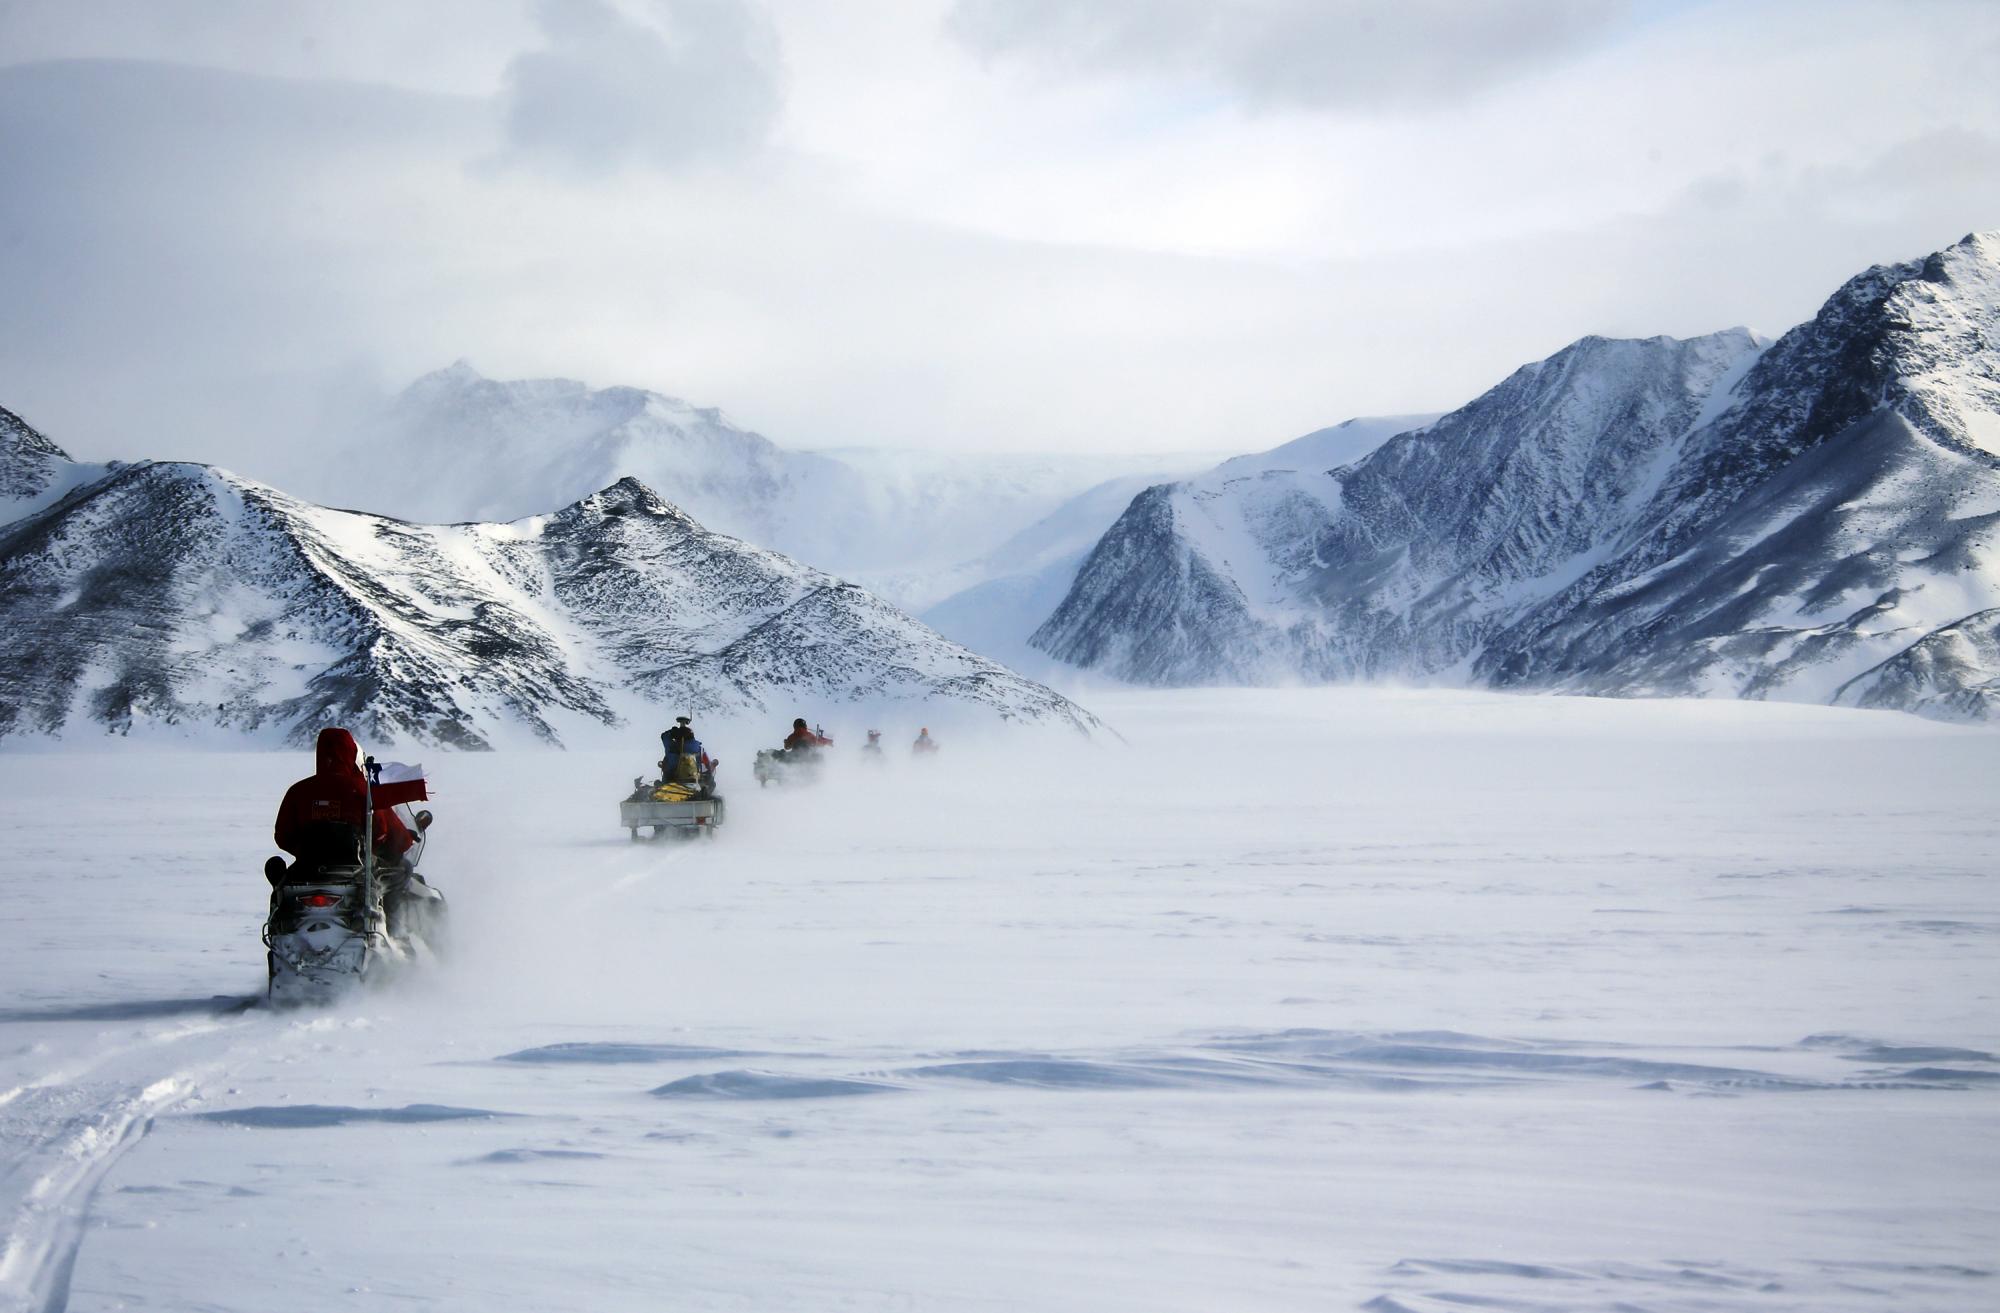 Fotografía del 2 de diciembre de 2015, que muestra a un grupo de científicos dirigiéndose en motos de nieve hacia Lester Peak durante una salida a terreno.